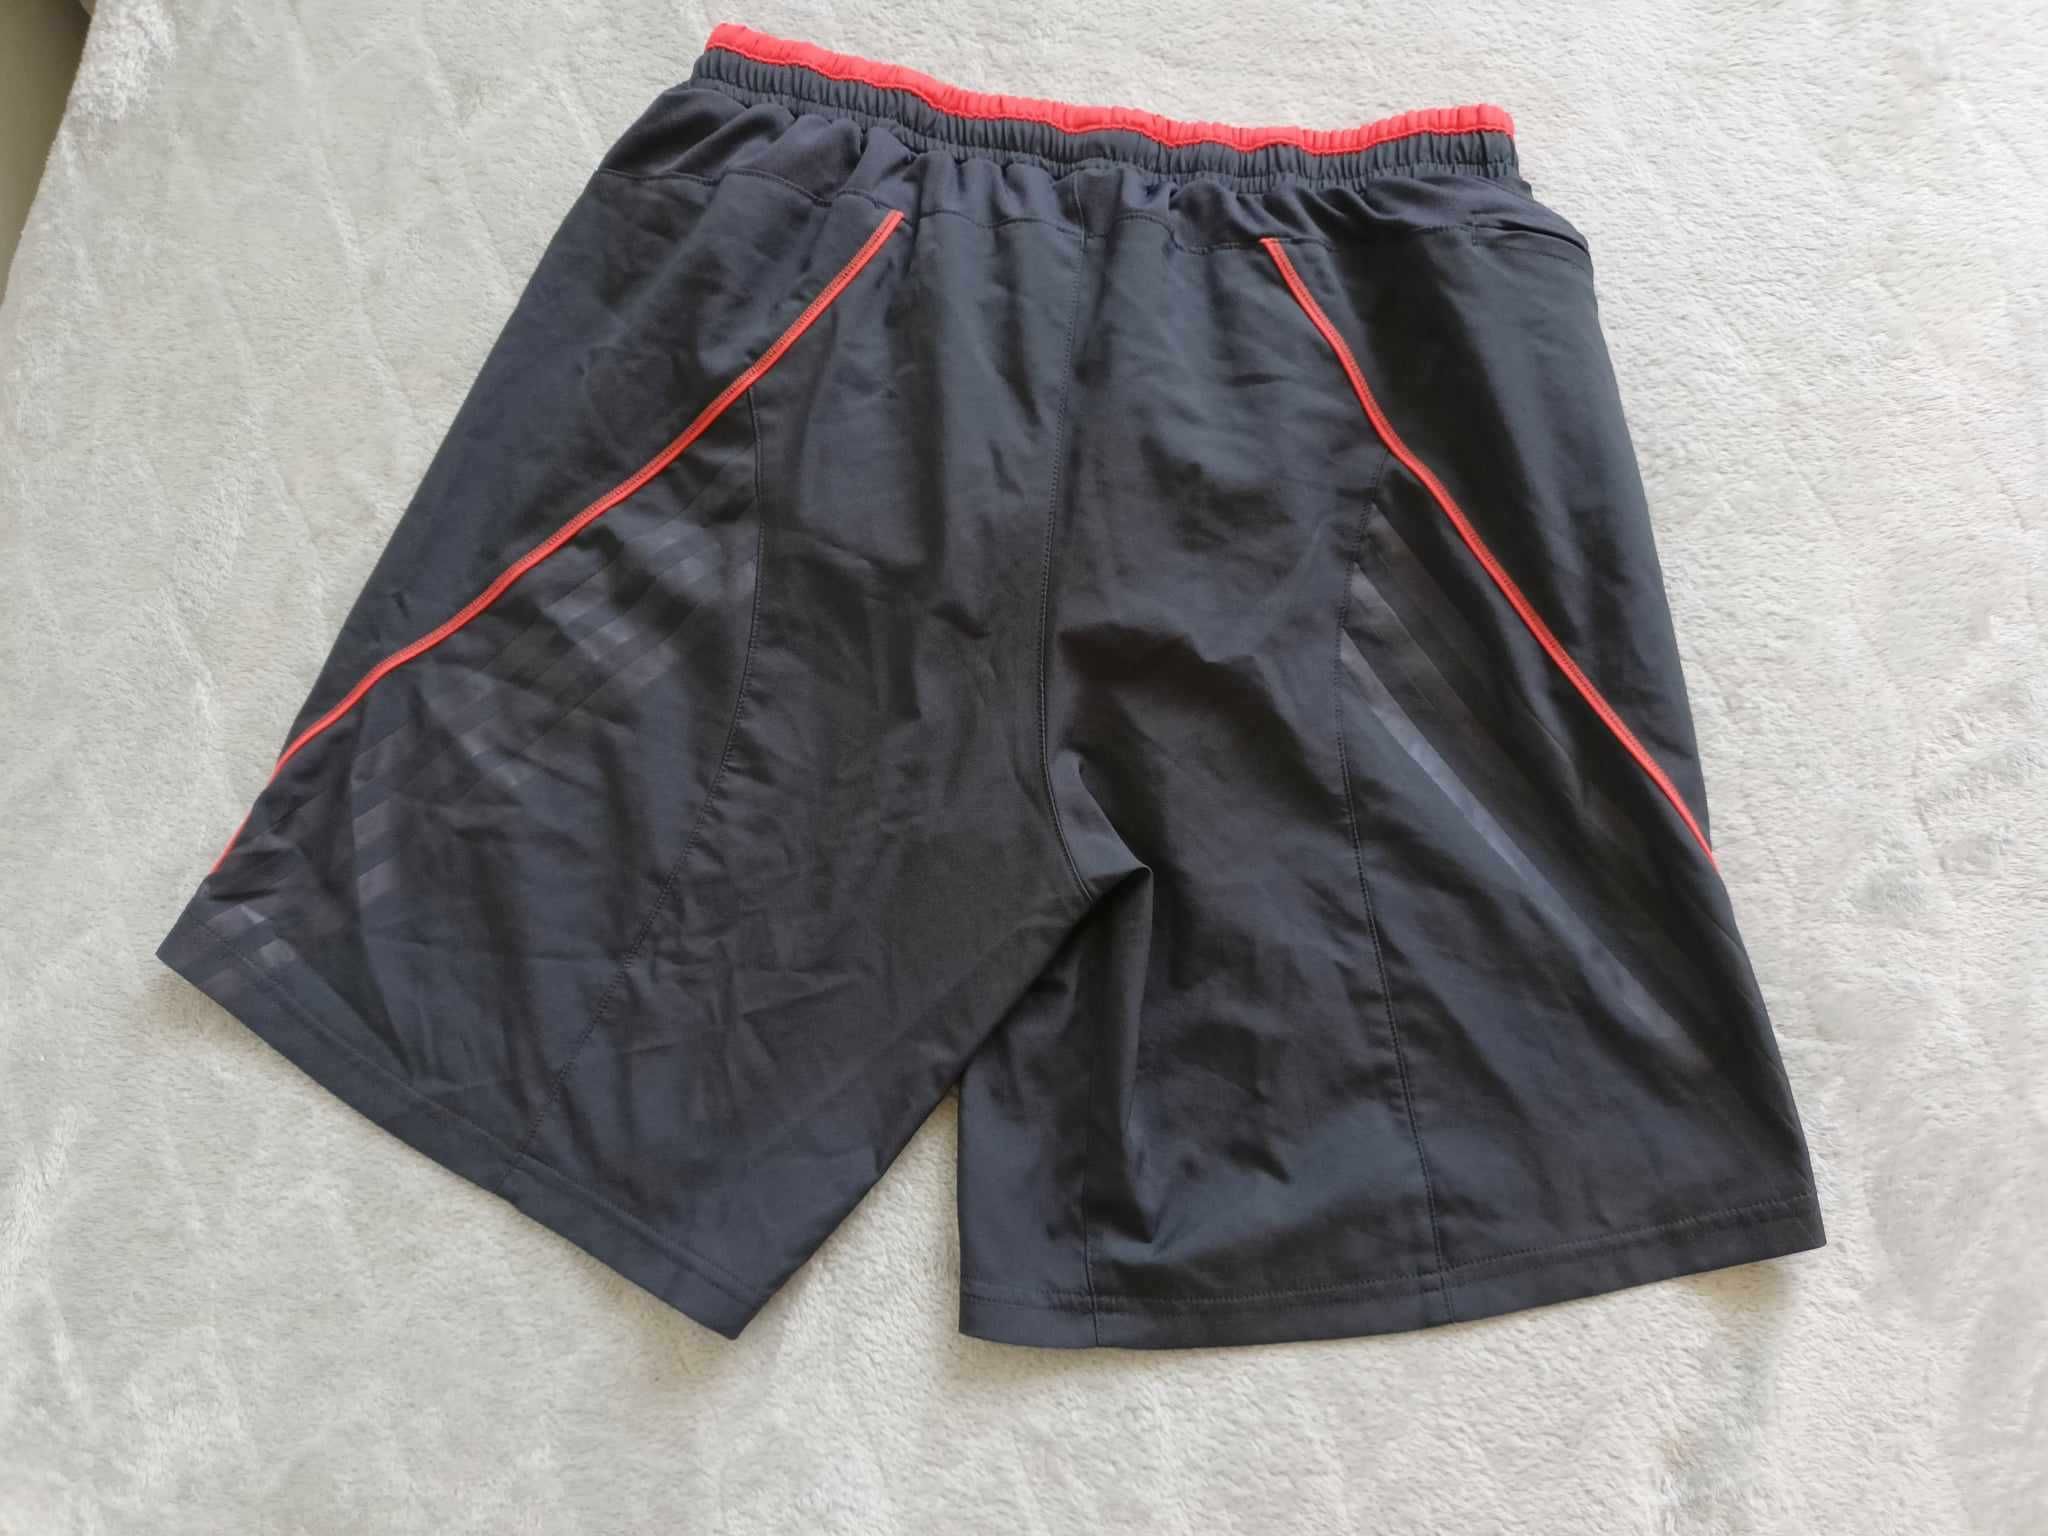 Męskie spodenki/szorty treningowe Adidas - ciemnoszare, rozmiar S